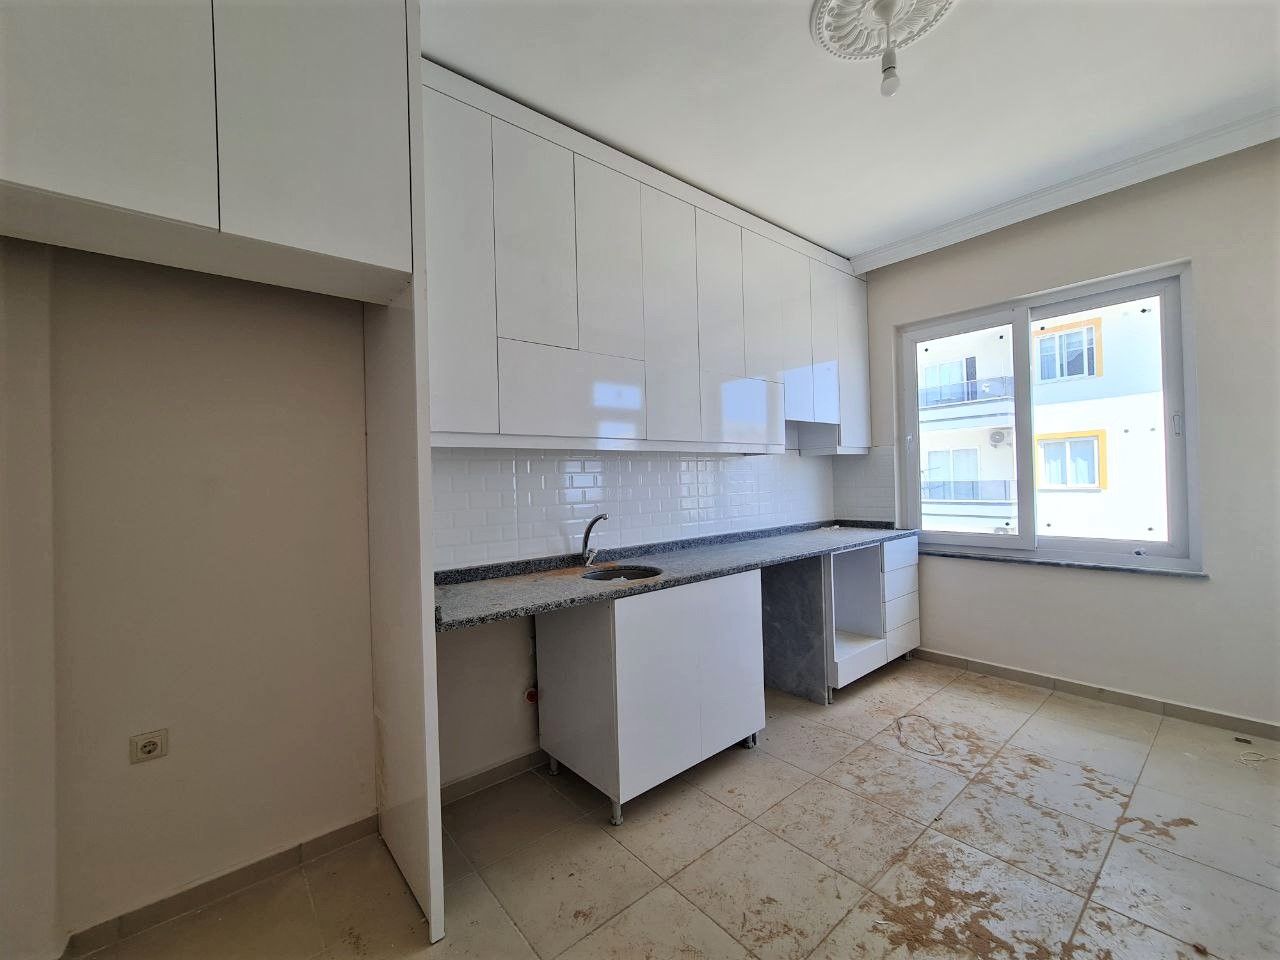 Duplex apartment 3+1 with separate kitchen, Payallar district